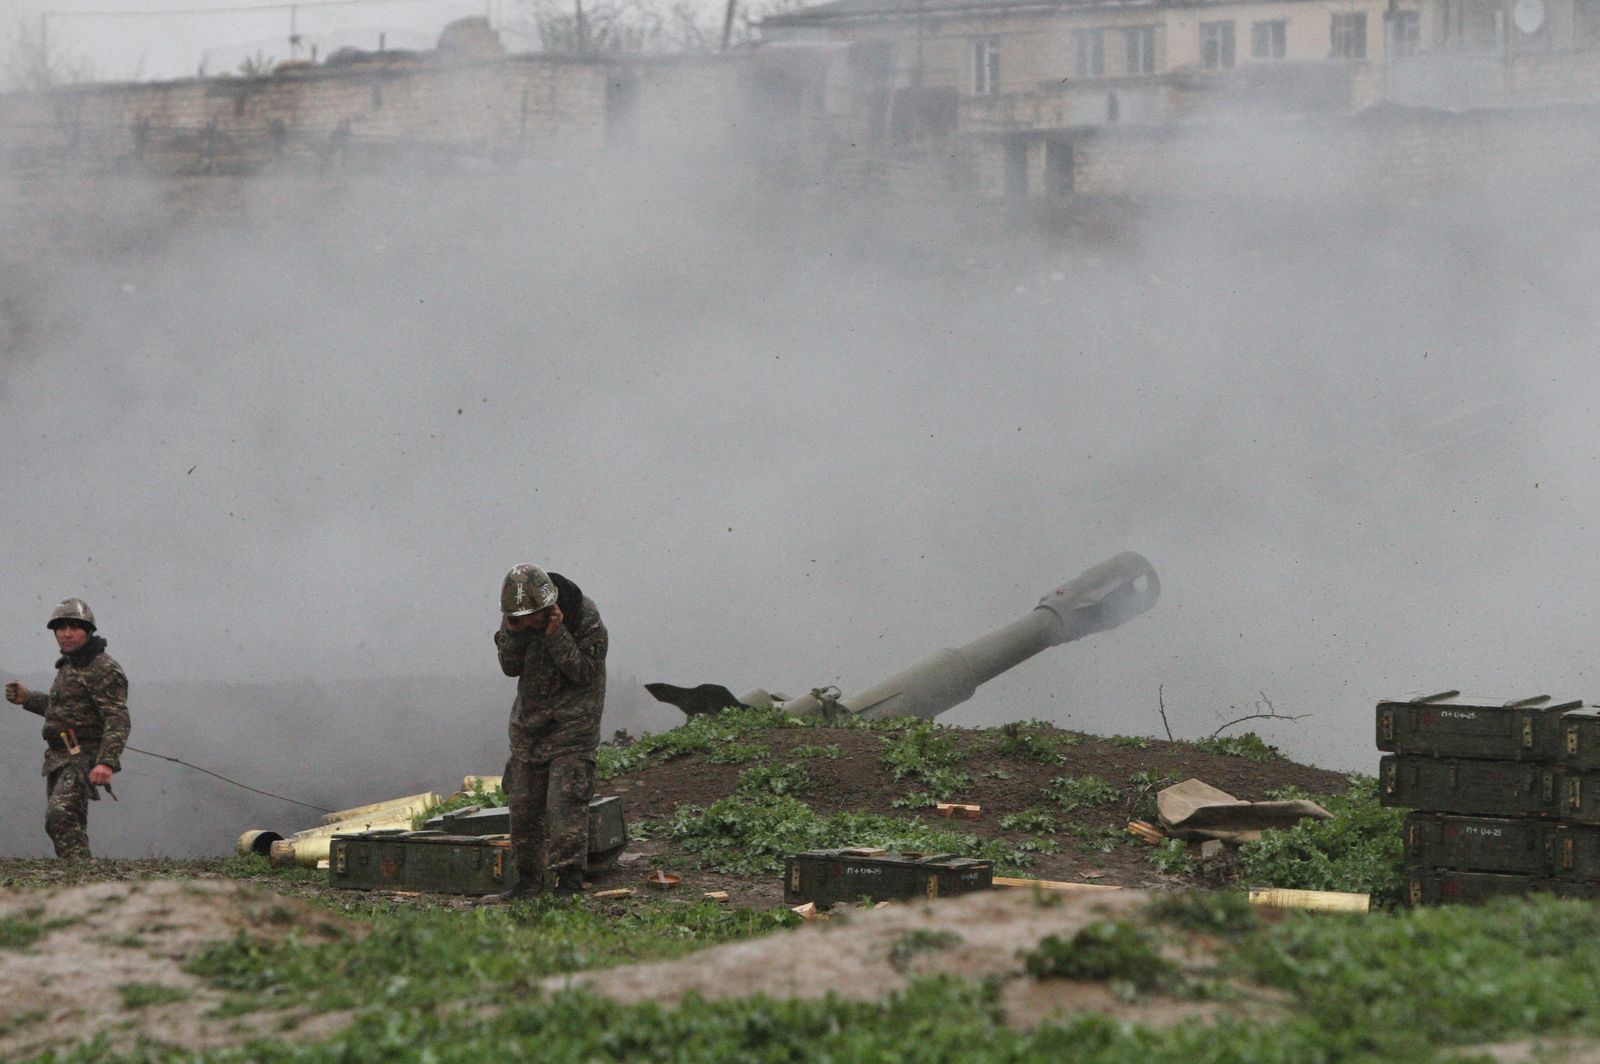 جنود أرمن في جيش الدفاع الذاتي في ناجورنو قره باغ خلال إطلاقهم قذيفة مدفعية باتجاه القوات الأذربيجانية من مواقعهم في بلدة مارتاكيرت، 3 أبريل 2016 - AFP